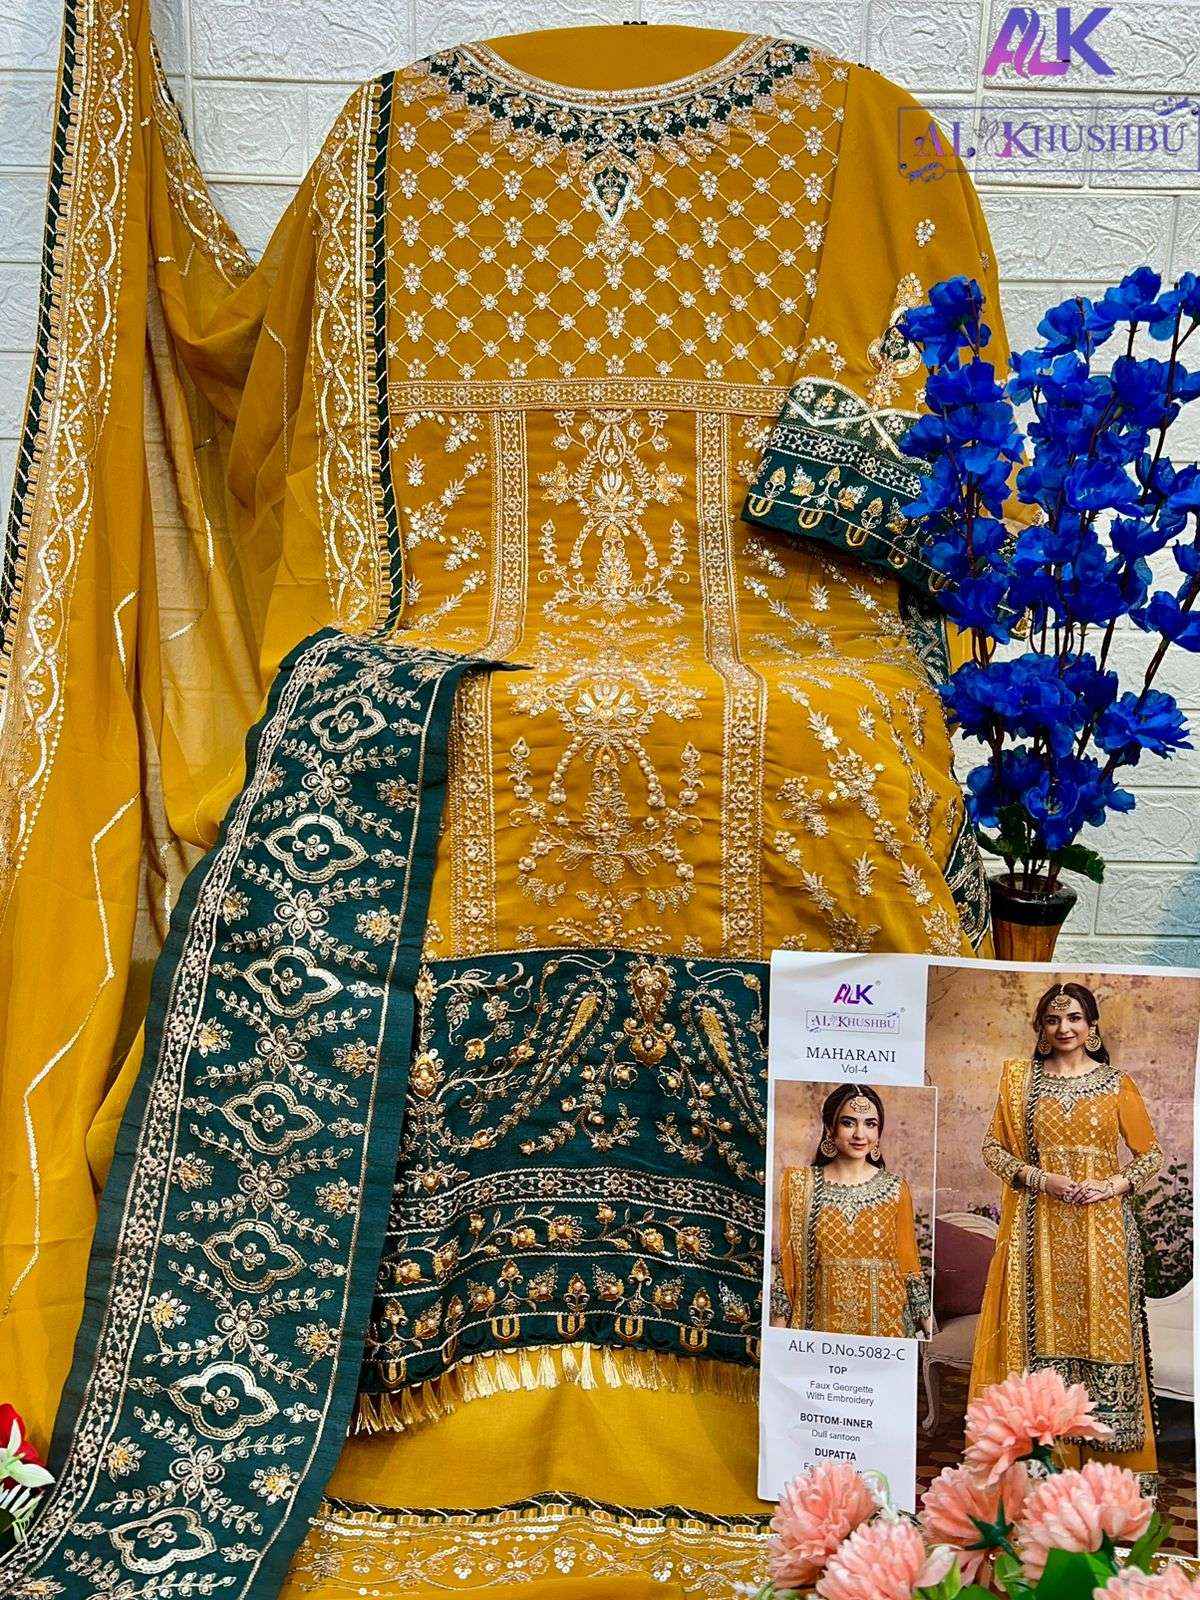 Al Khushbu Maharani Vol 4 Georgette Dress Material 4 pcs Catalogue